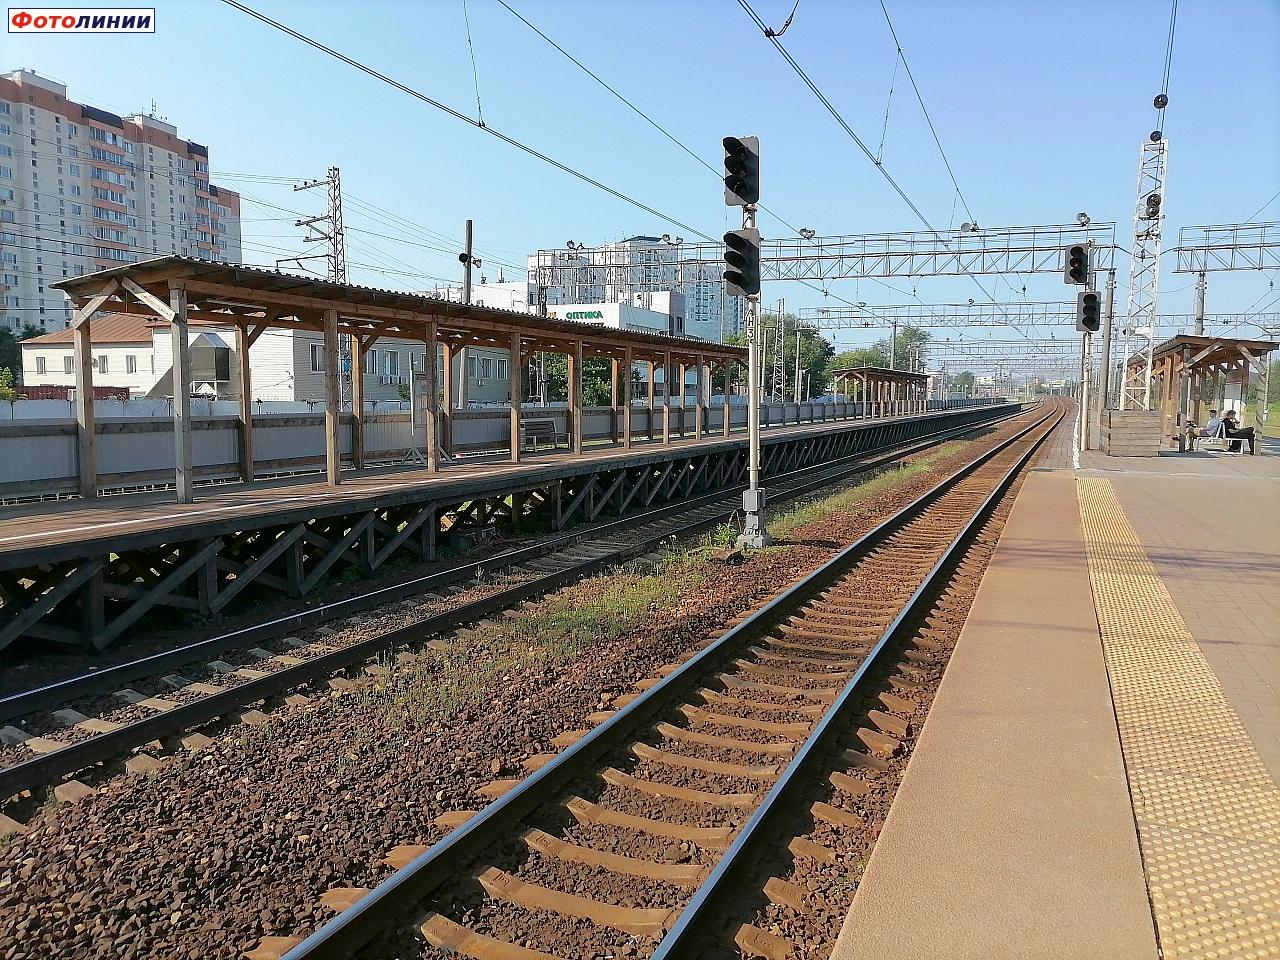 Навесы на временных платформах с южной стороны, вид в нечётном направлении